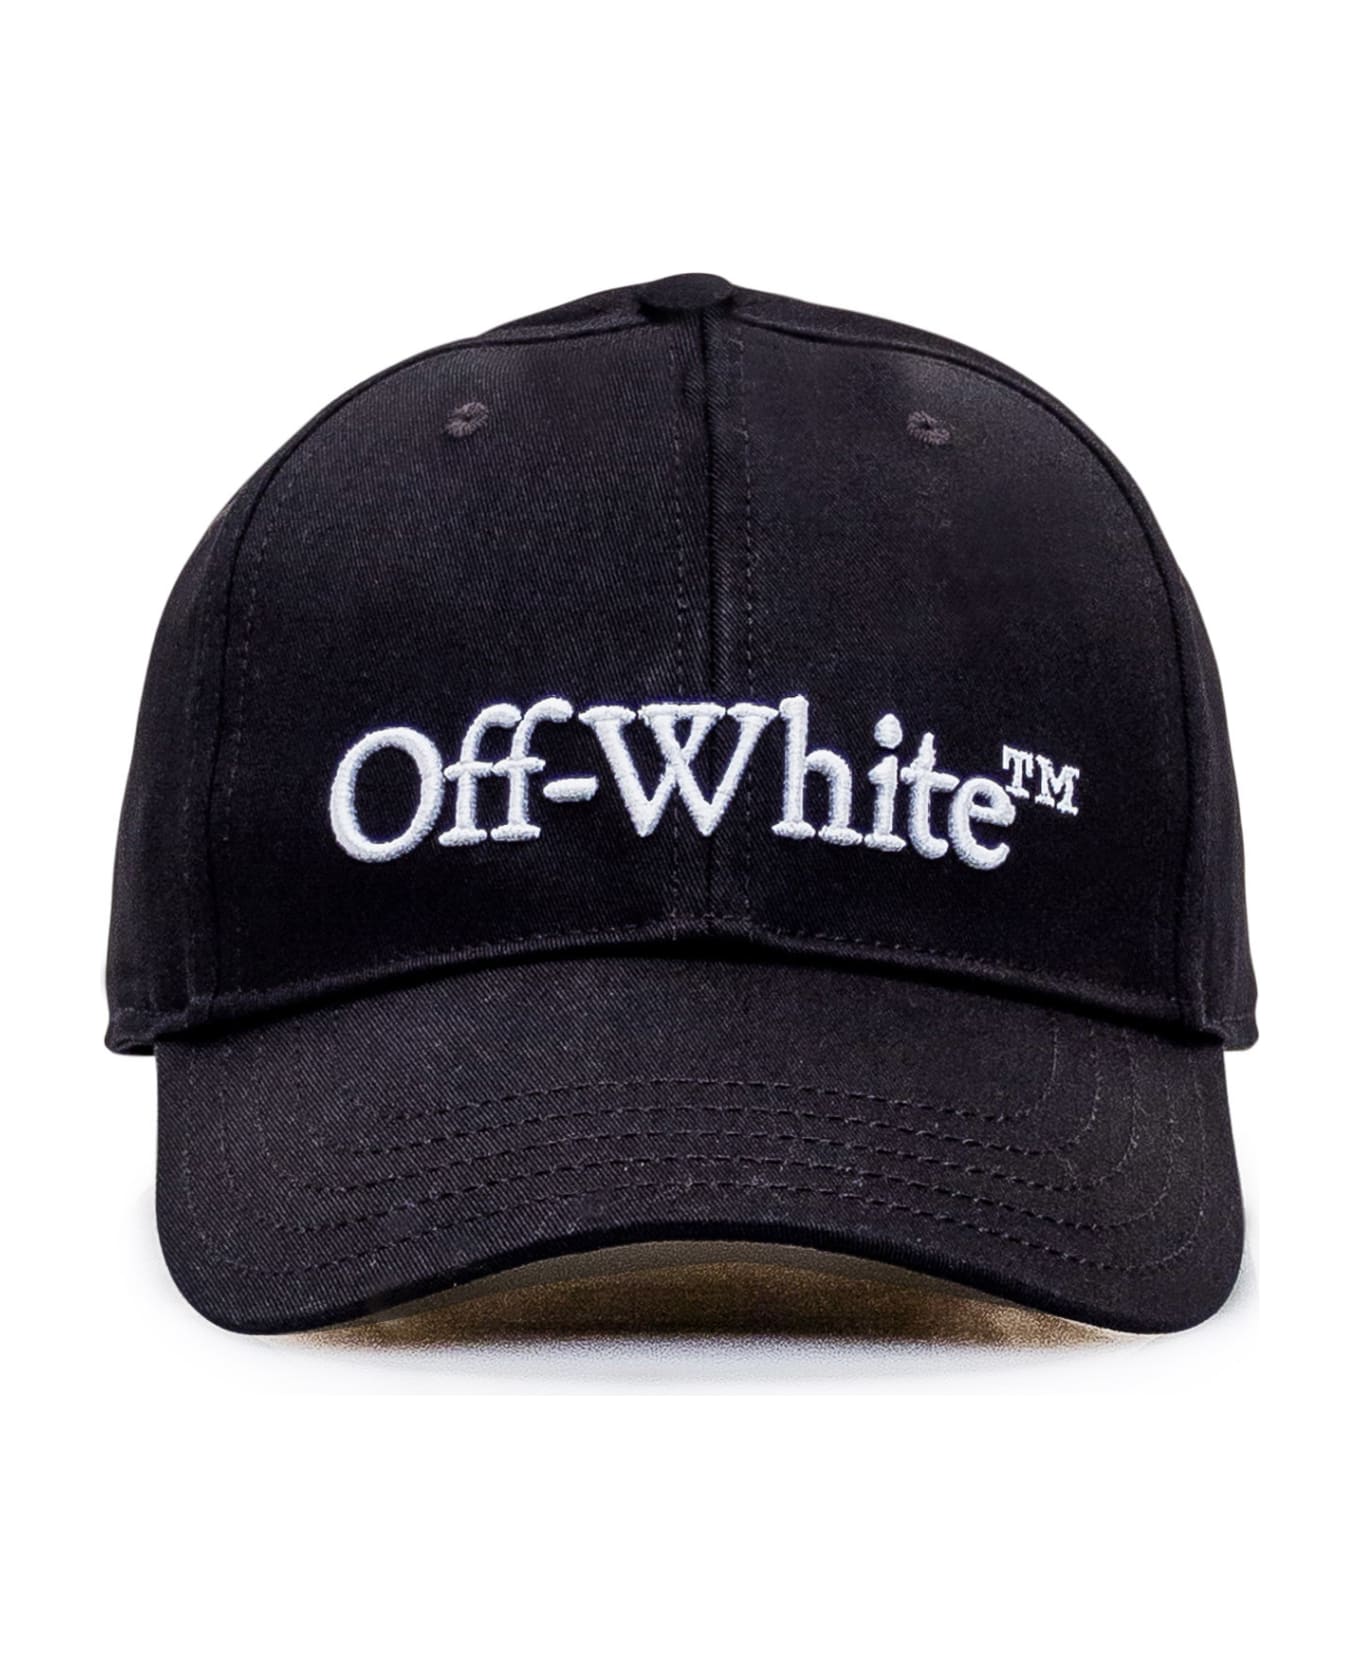 Off-White Hat - Black White 帽子